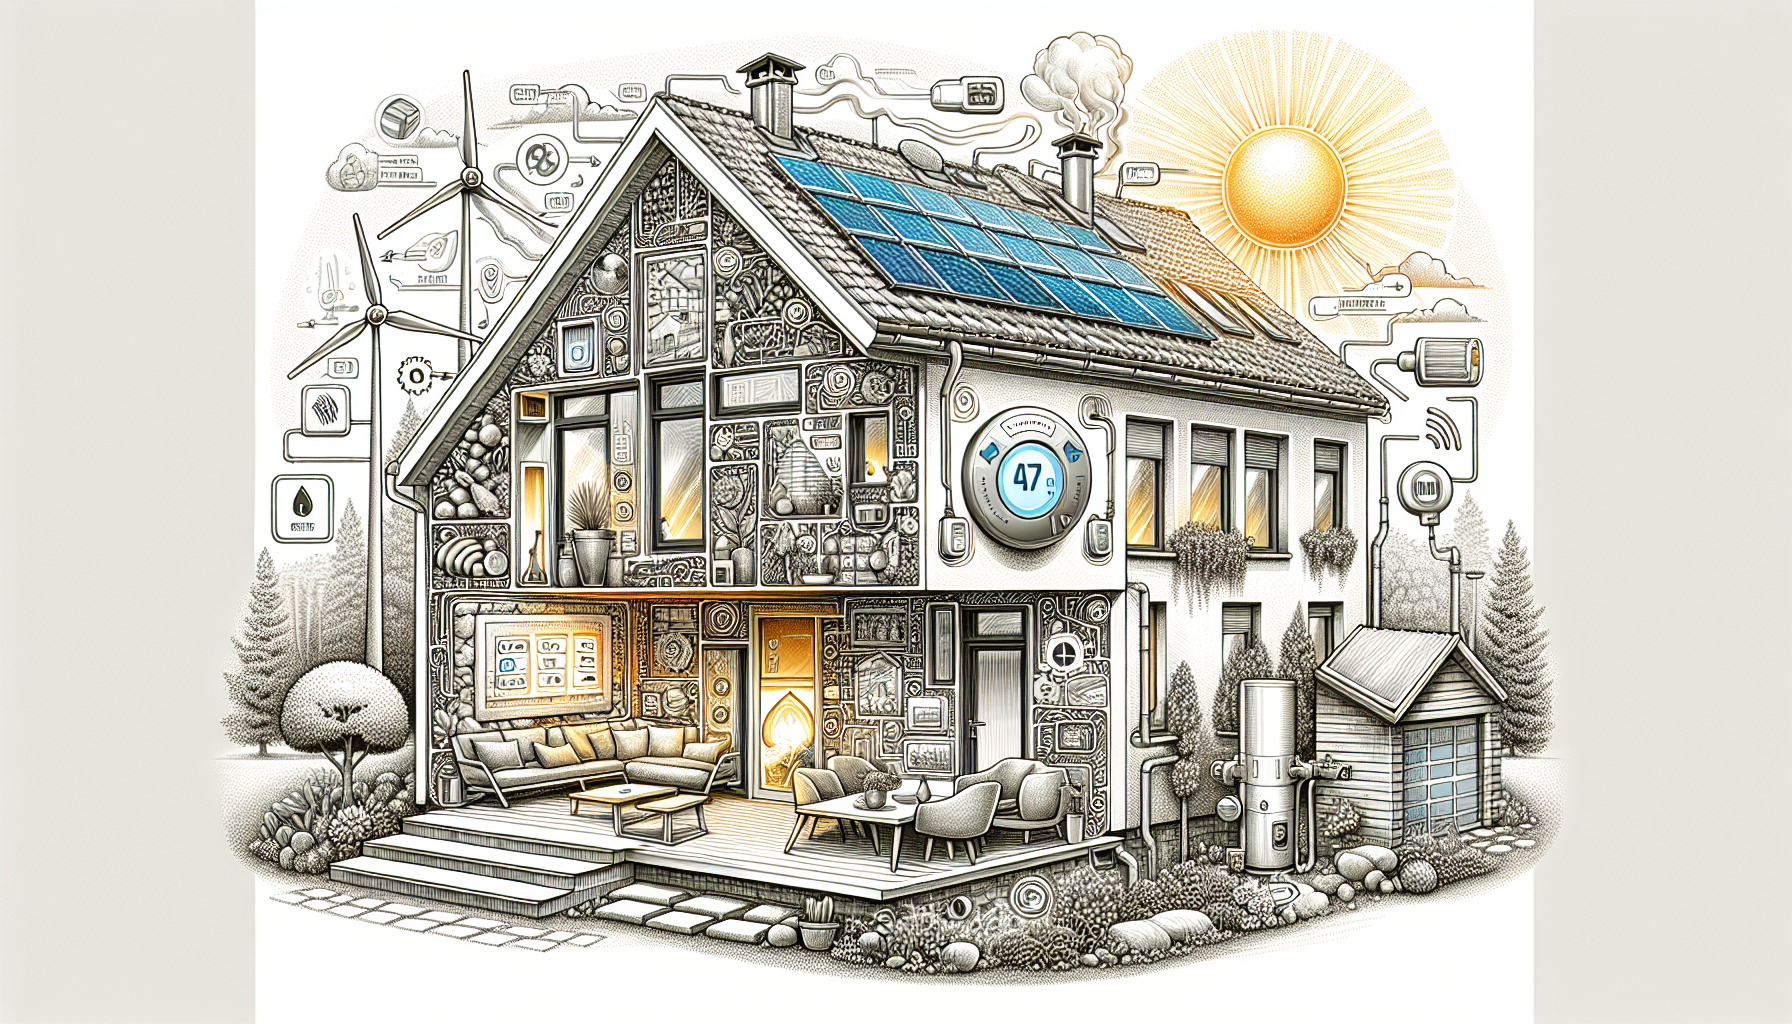 Energiesparmaßnahmen für Ihr Zuhause - Illustration von Energiesparmaßnahmen